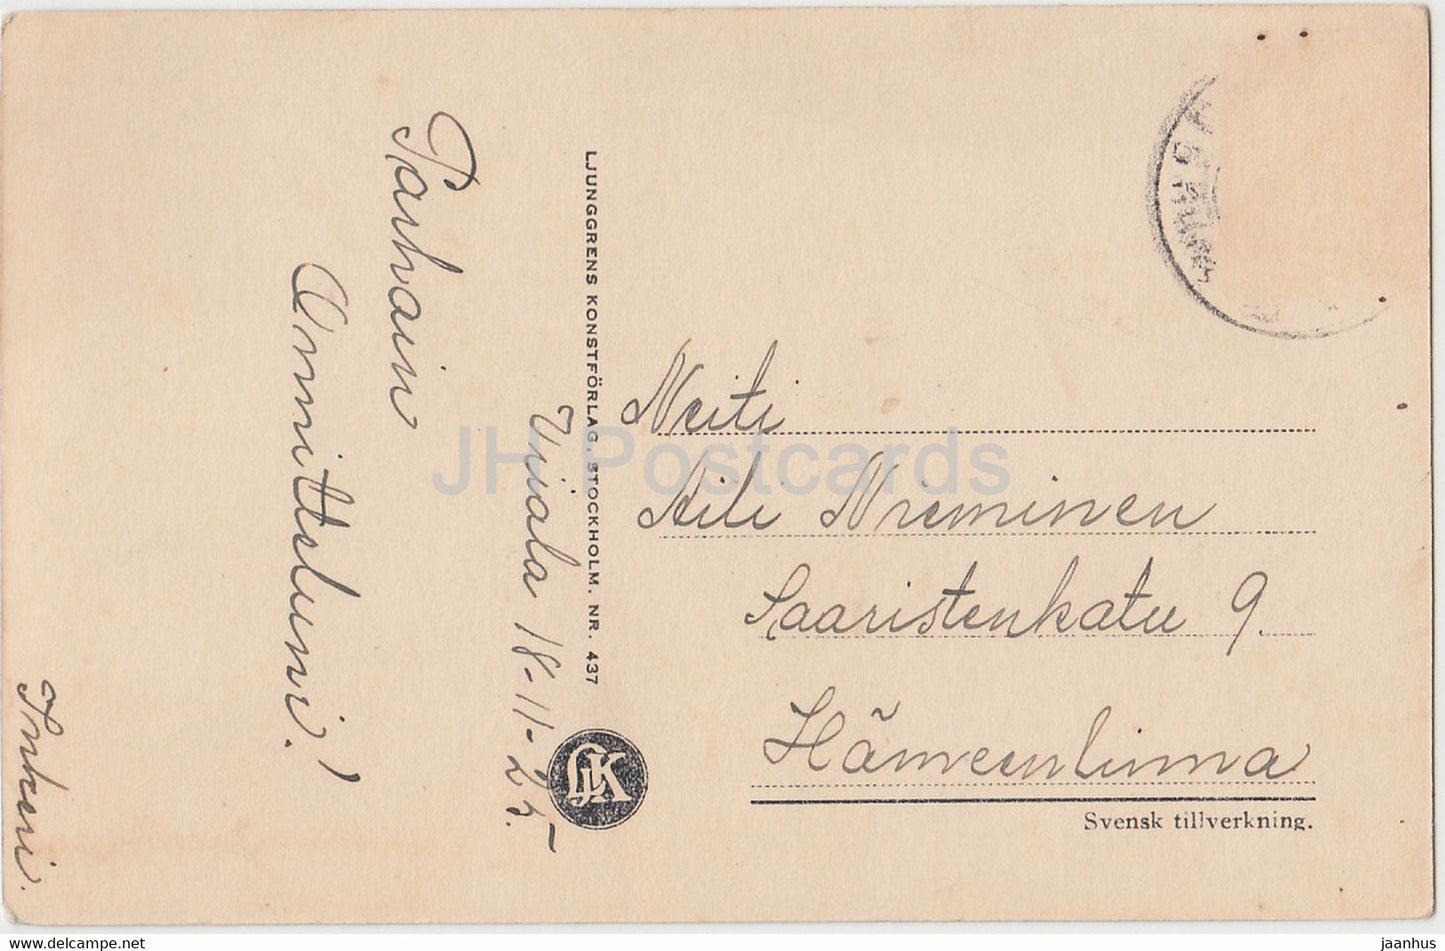 Acteur américain Conway Tearle - Film - Film - 437 - 1925 - Suède - carte postale ancienne - utilisé